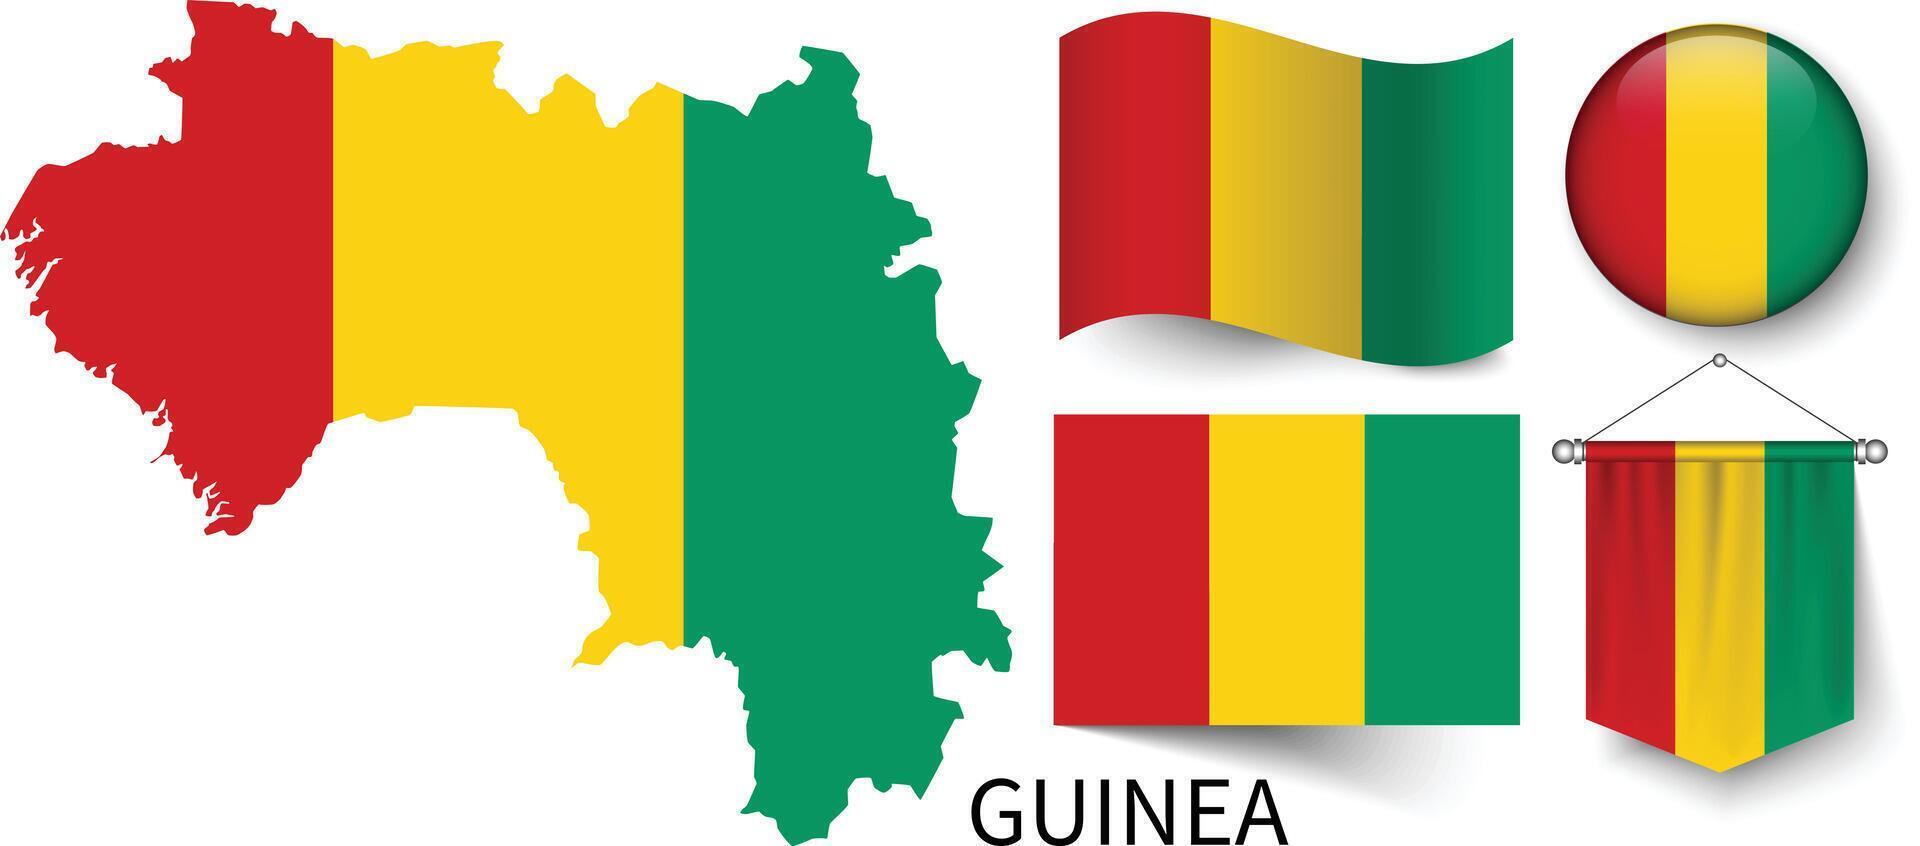 das verschiedene Muster von das Guinea National Flaggen und das Karte von Guineas Grenzen vektor